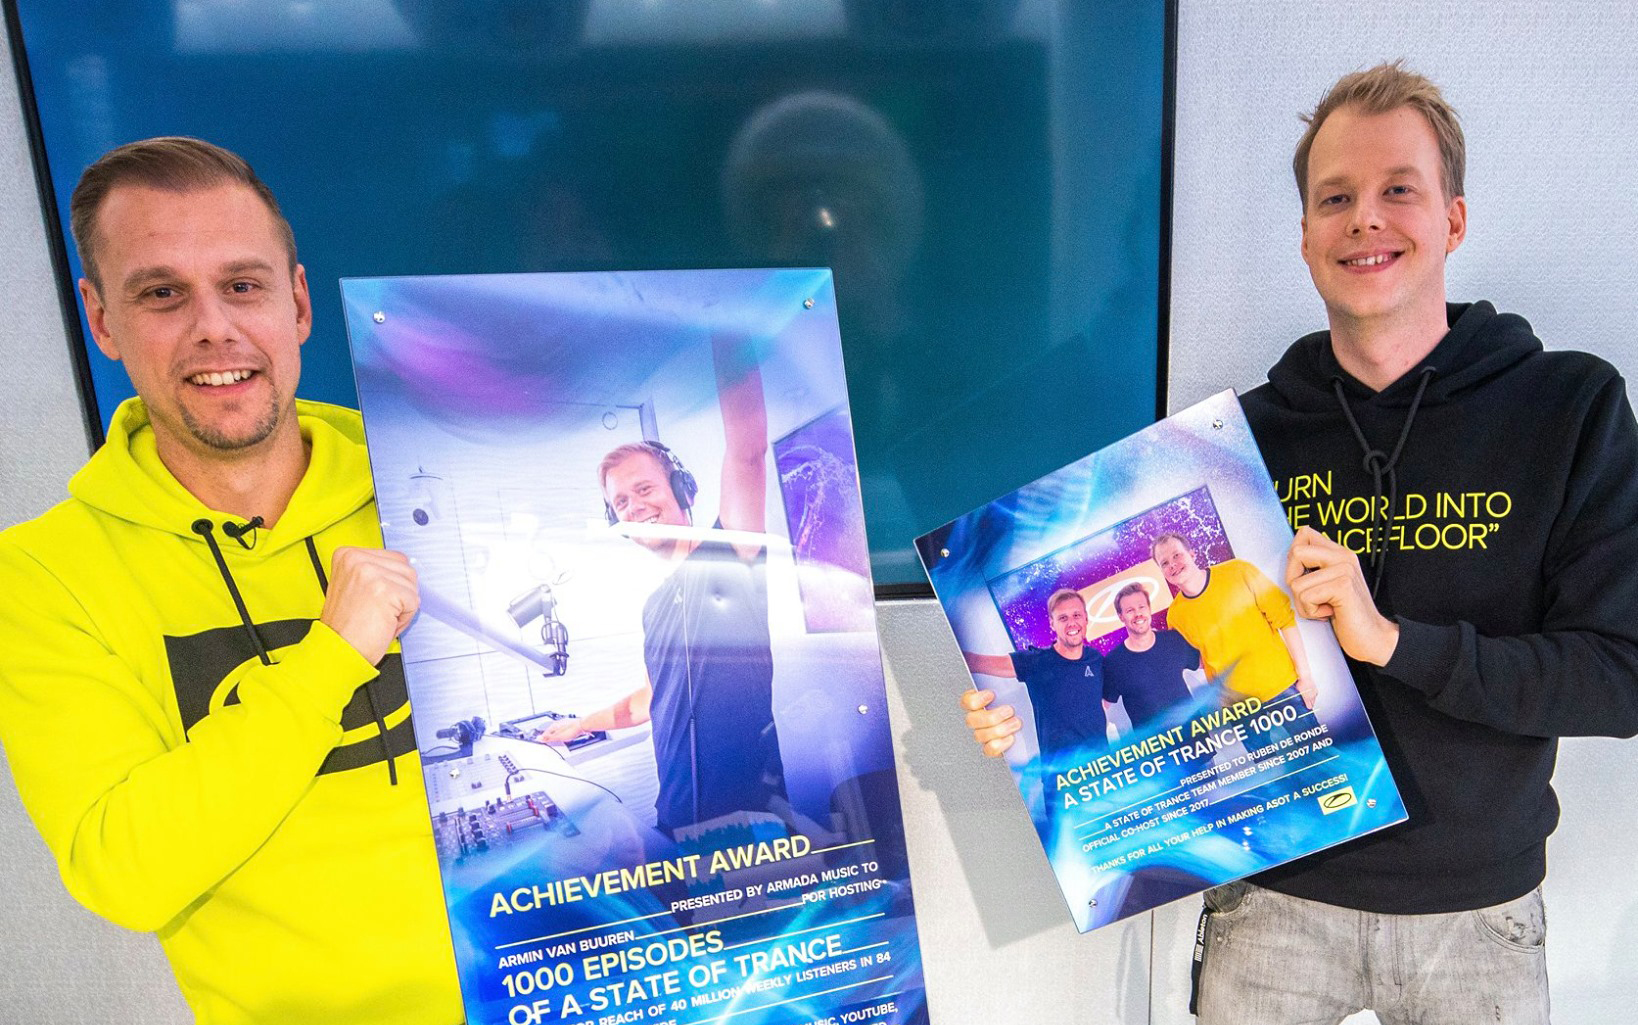 Armin van Buuren atinge 1000 episódios no ASOT e divulga lançamento do evento de 2 dias que acontecerá em setembro